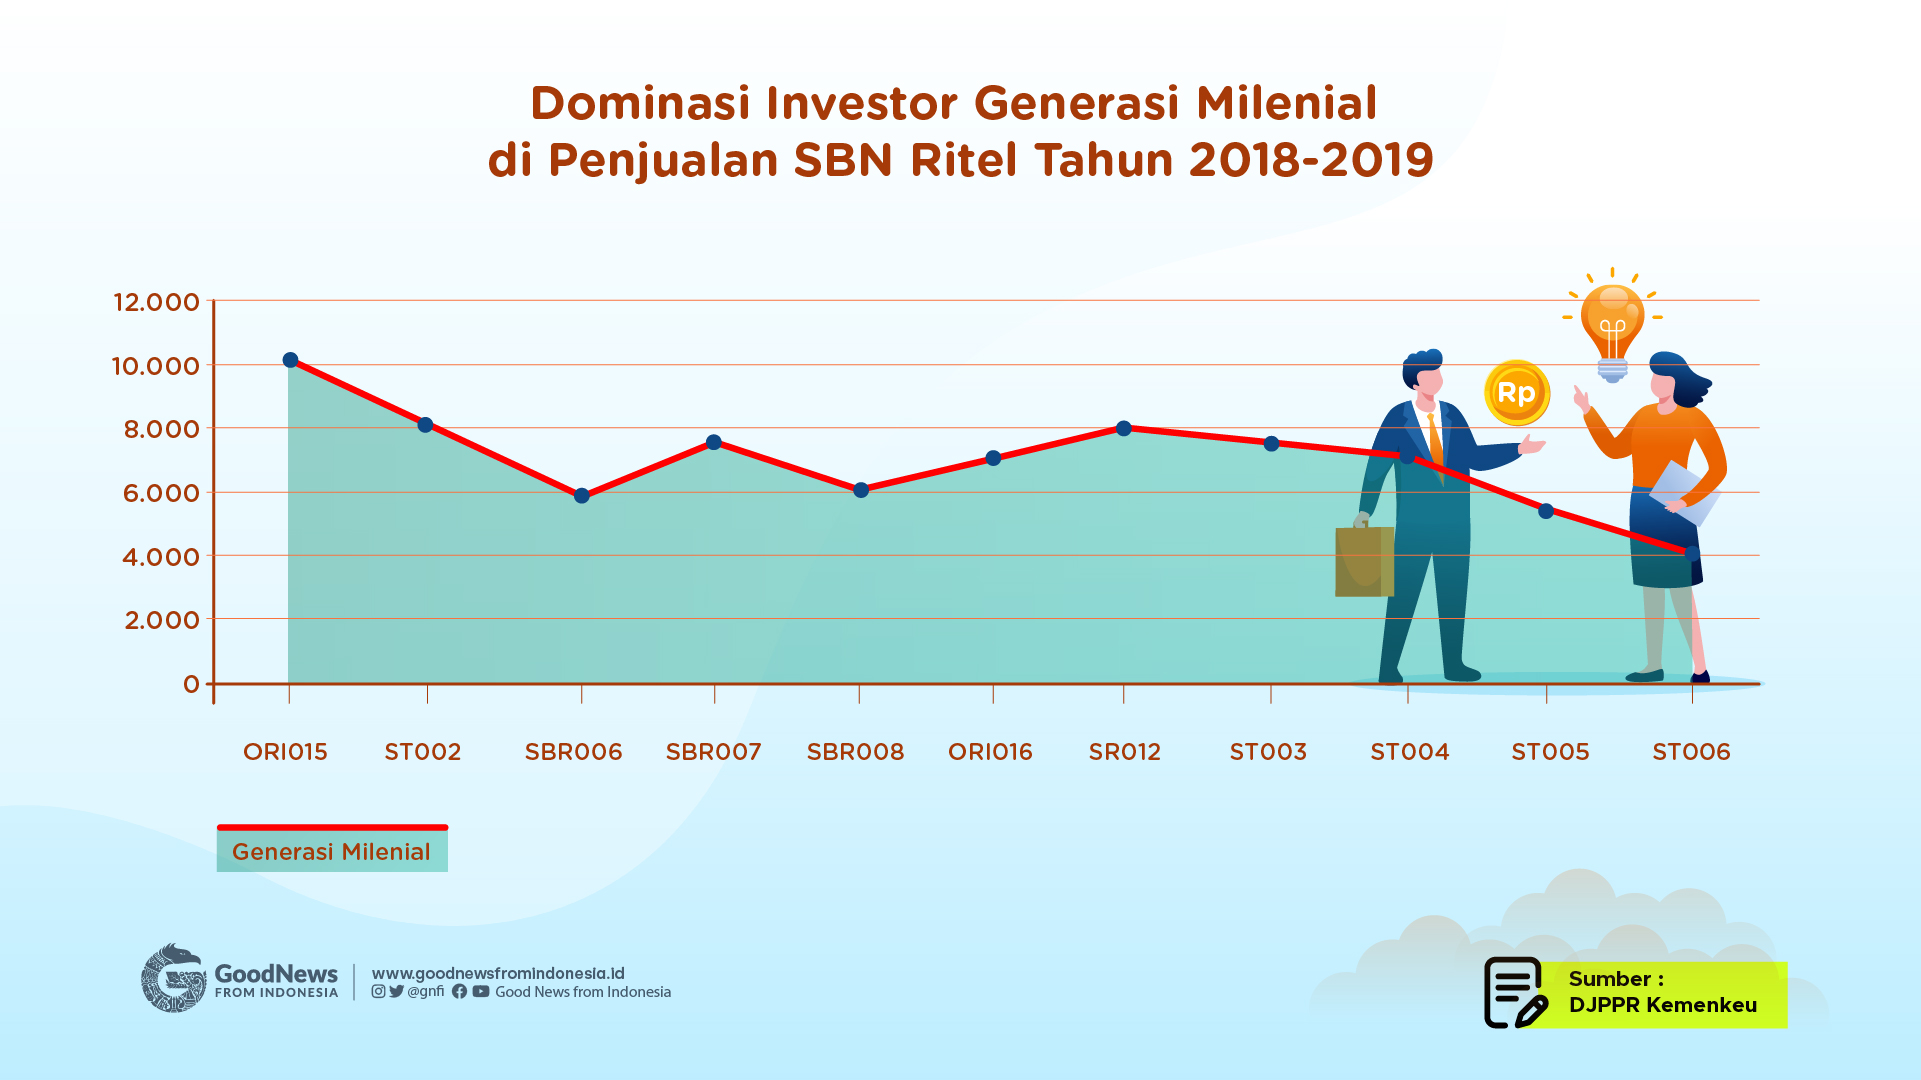 Generasi Milenial kerap mendominasi jumlah investor di beberapa seri kupon SBN ritel 